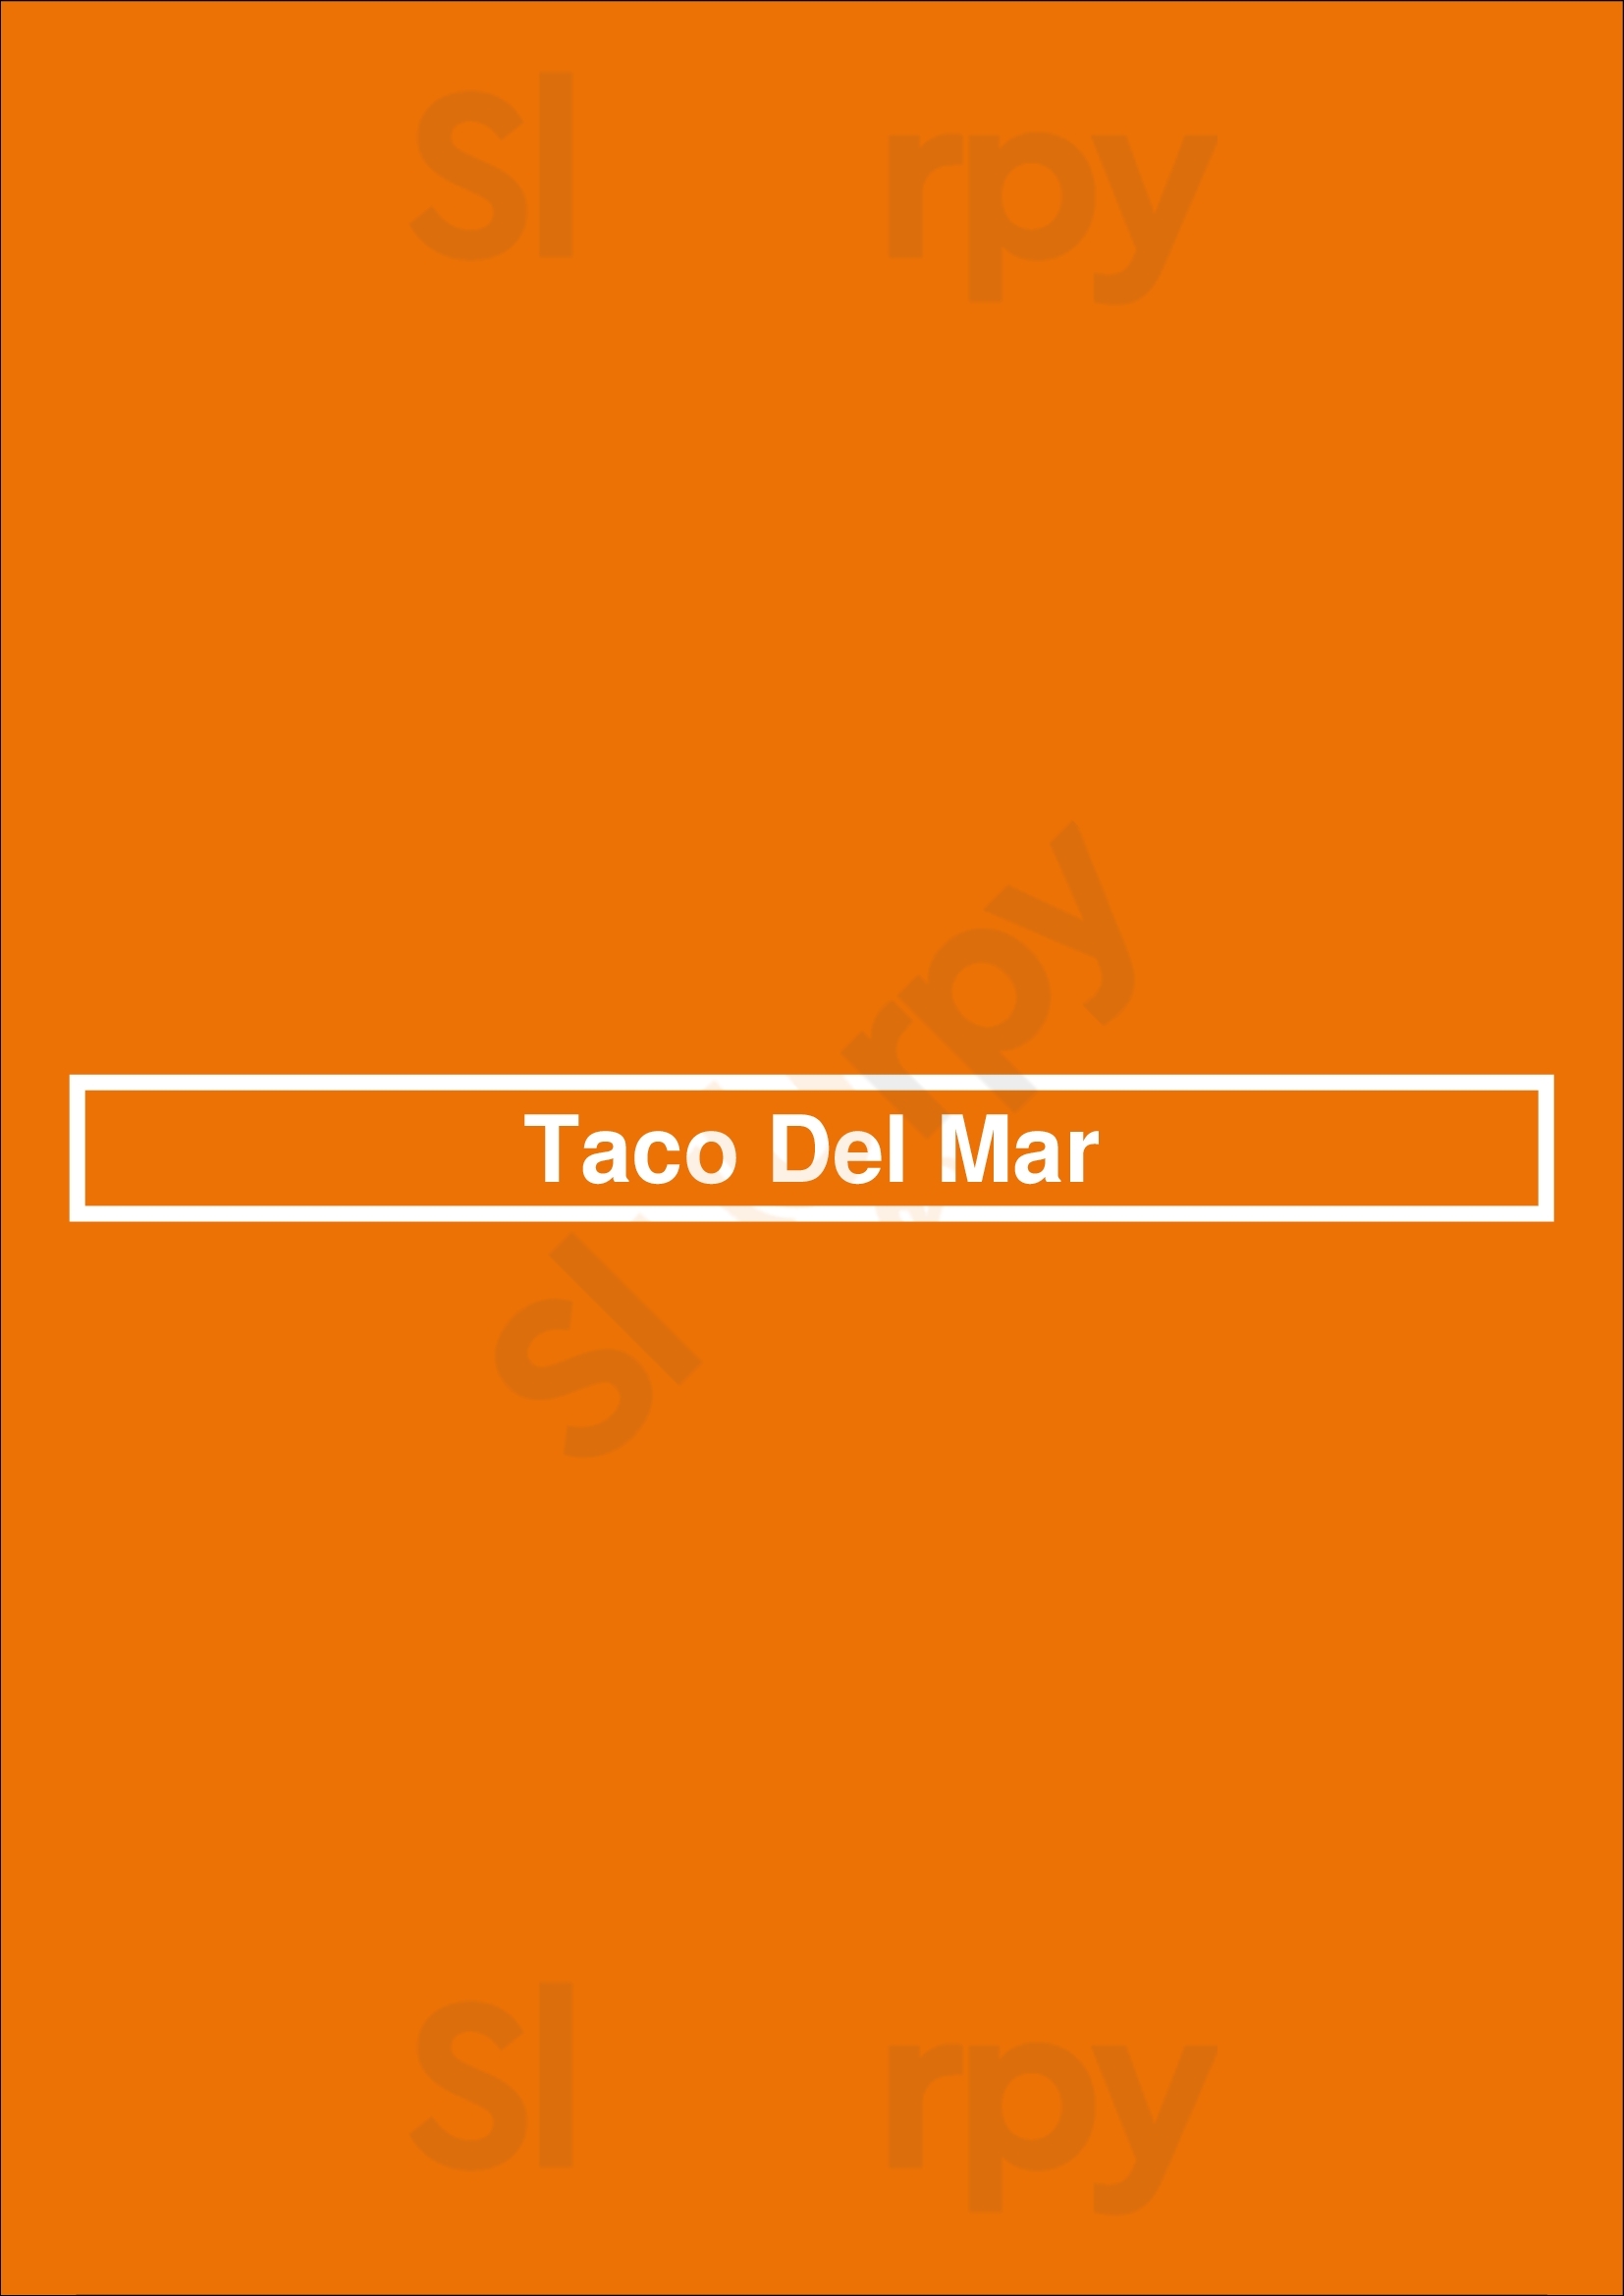 Taco Del Mar Winnipeg Menu - 1